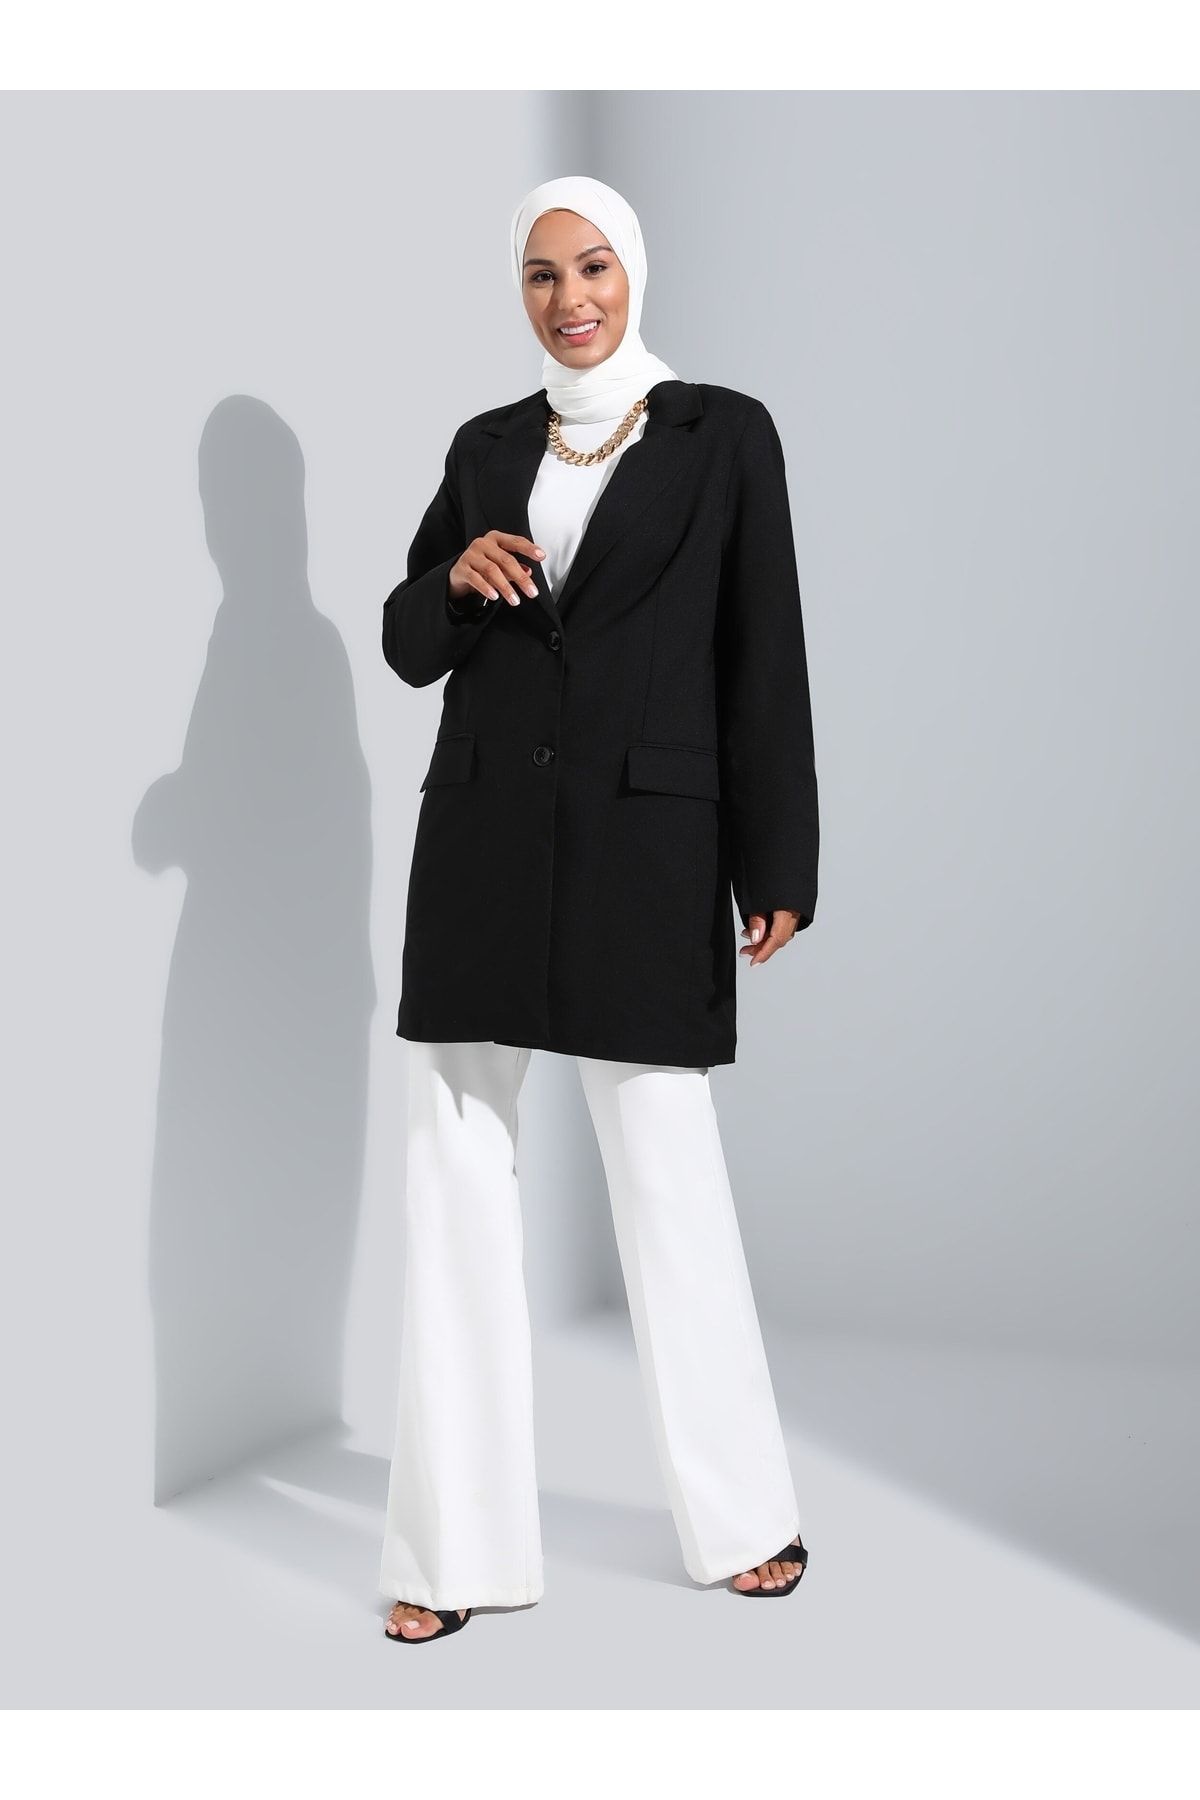 Refka Astarlı Cep Detaylı Blazer Ceket - Siyah - Woman